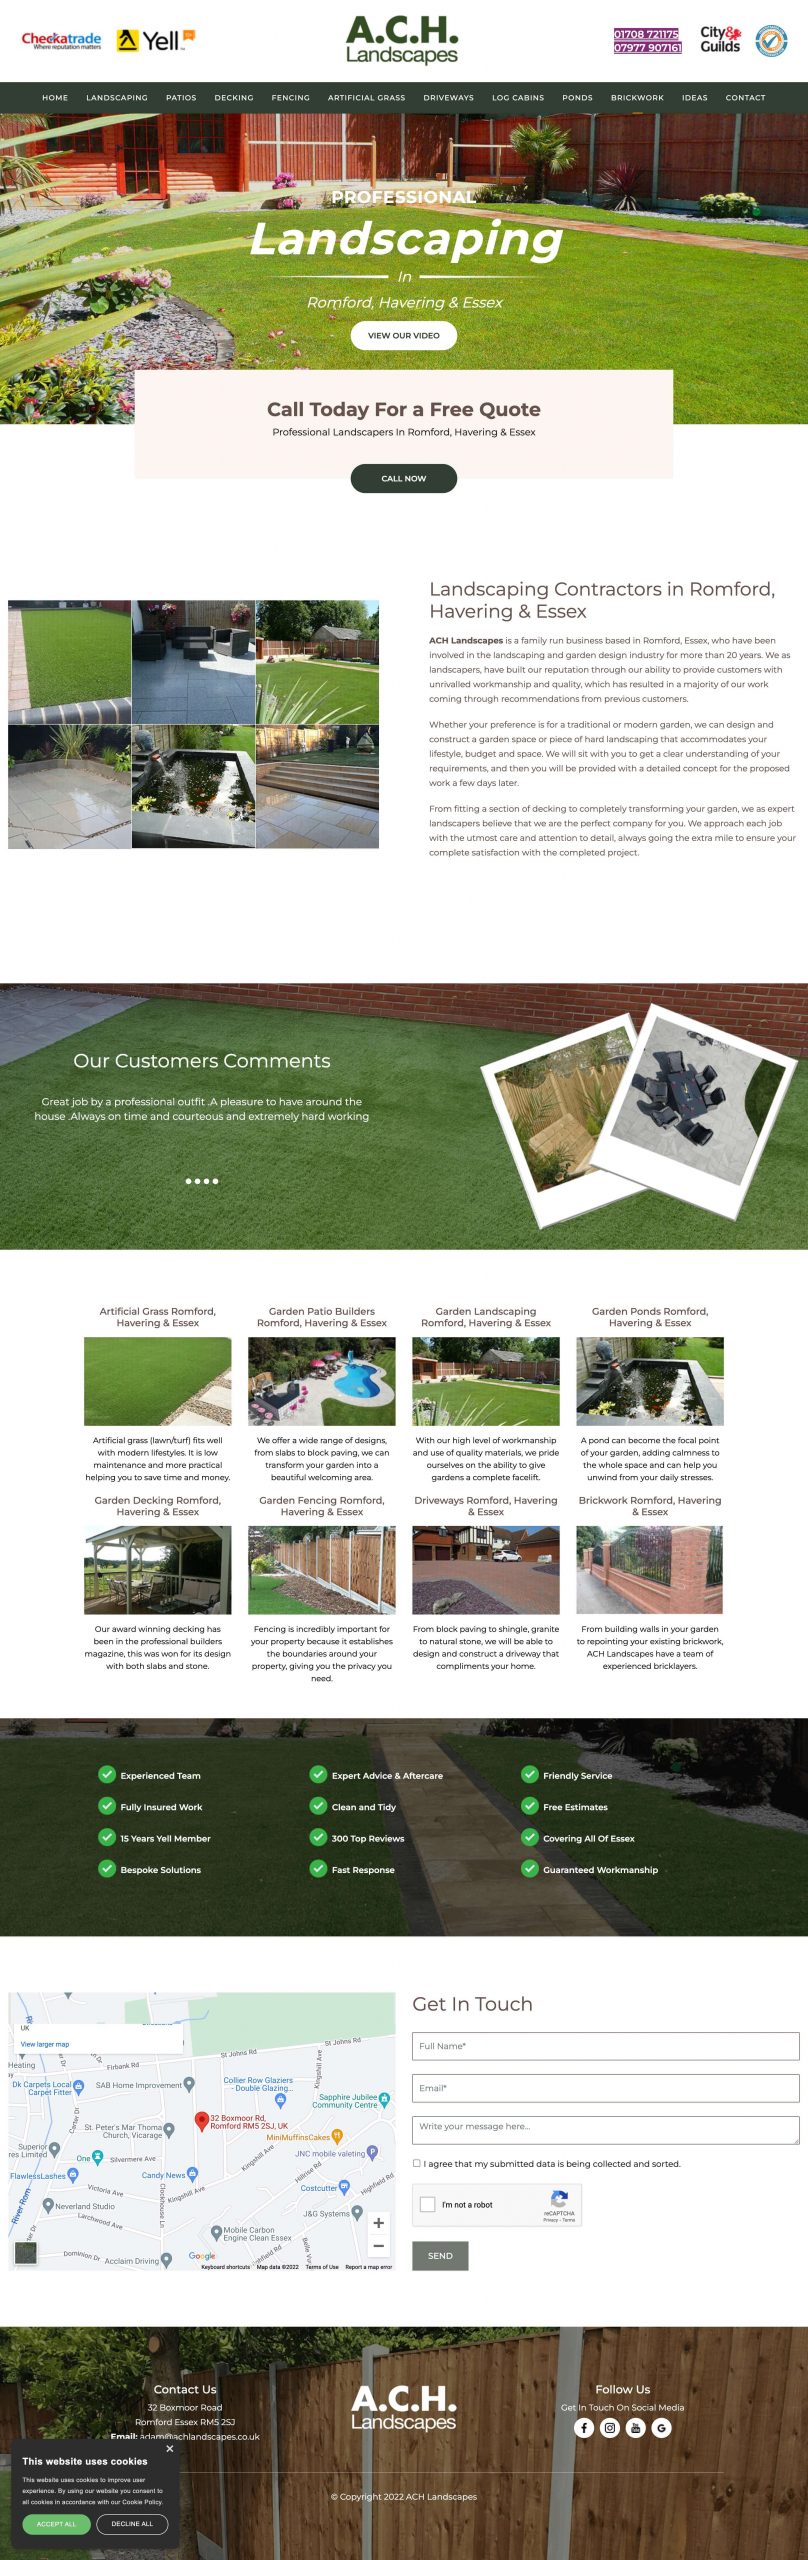 ACH Landscapes - landscaping website design